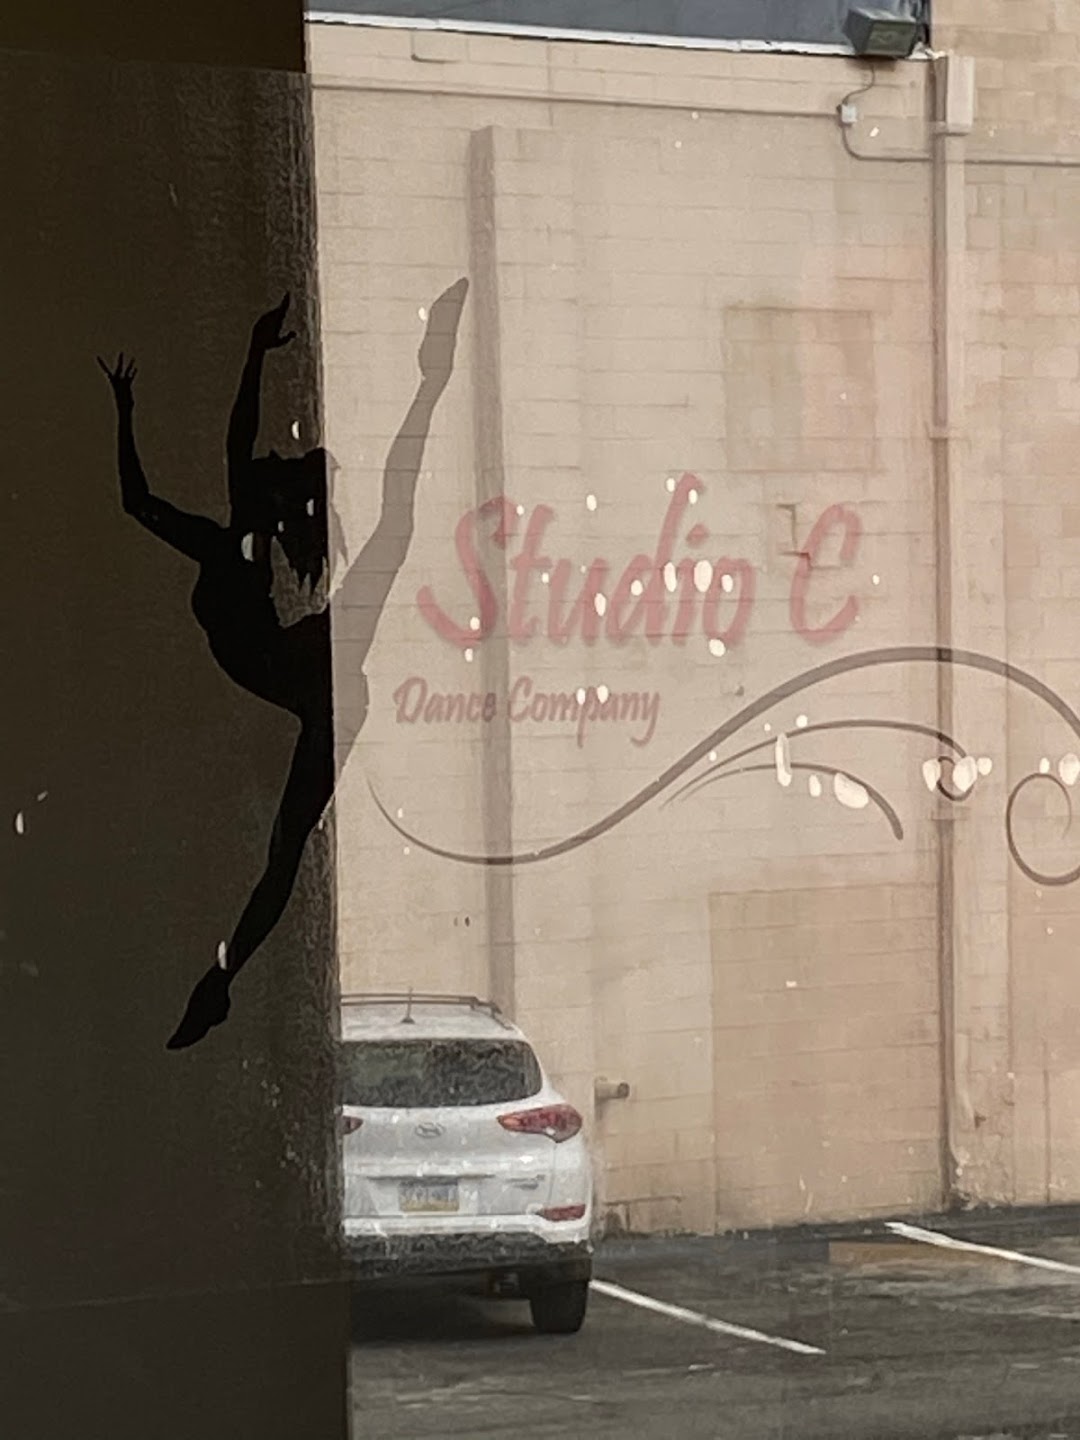 Studio C Dance Company